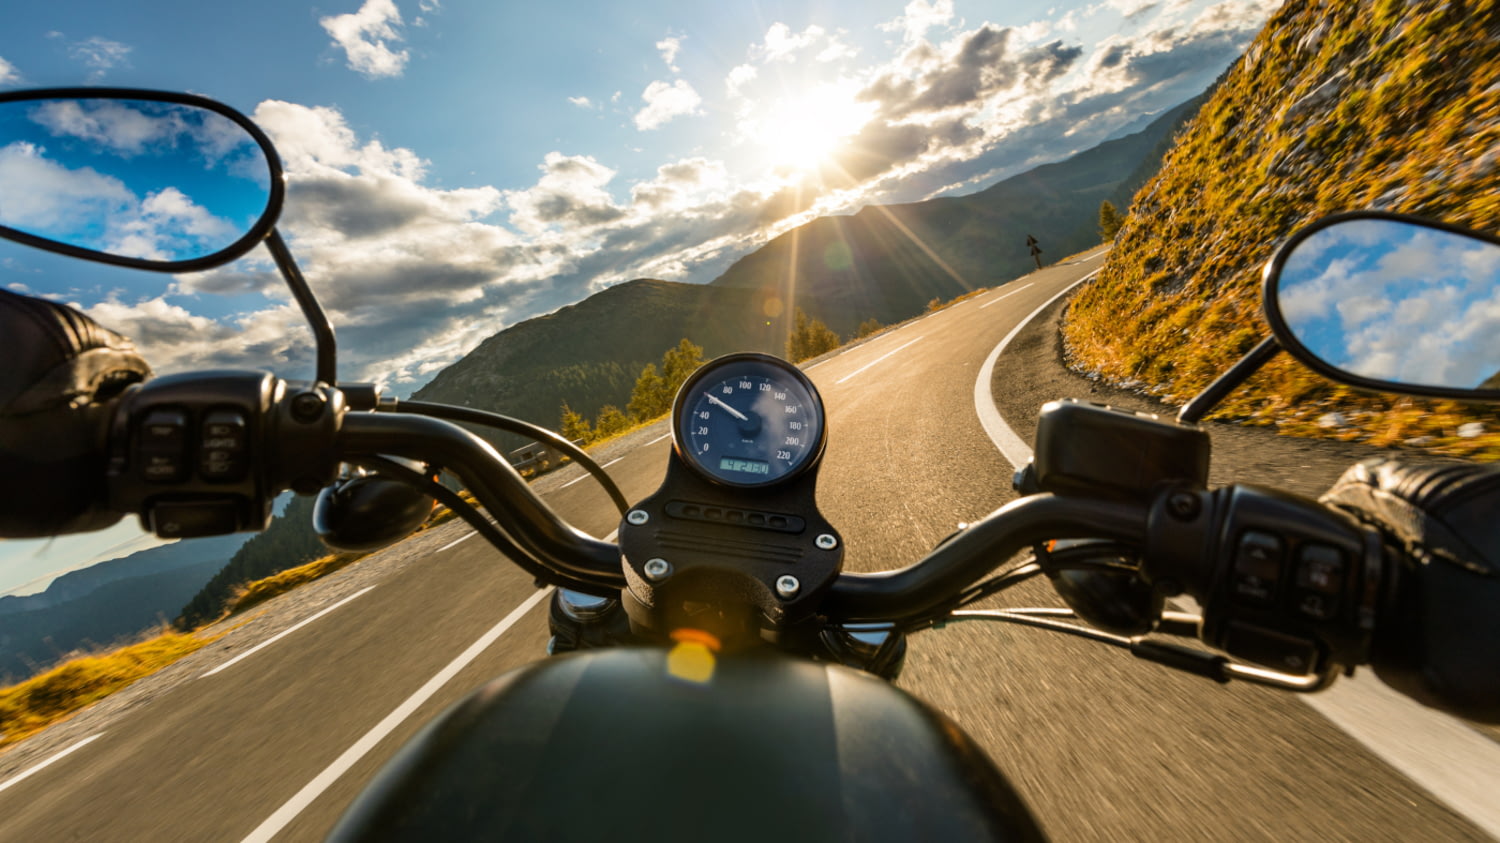 Motorradfahrer*in-Perspektive über einen Lenker auf eine Straße in den Bergen bei sonnigem Wetter